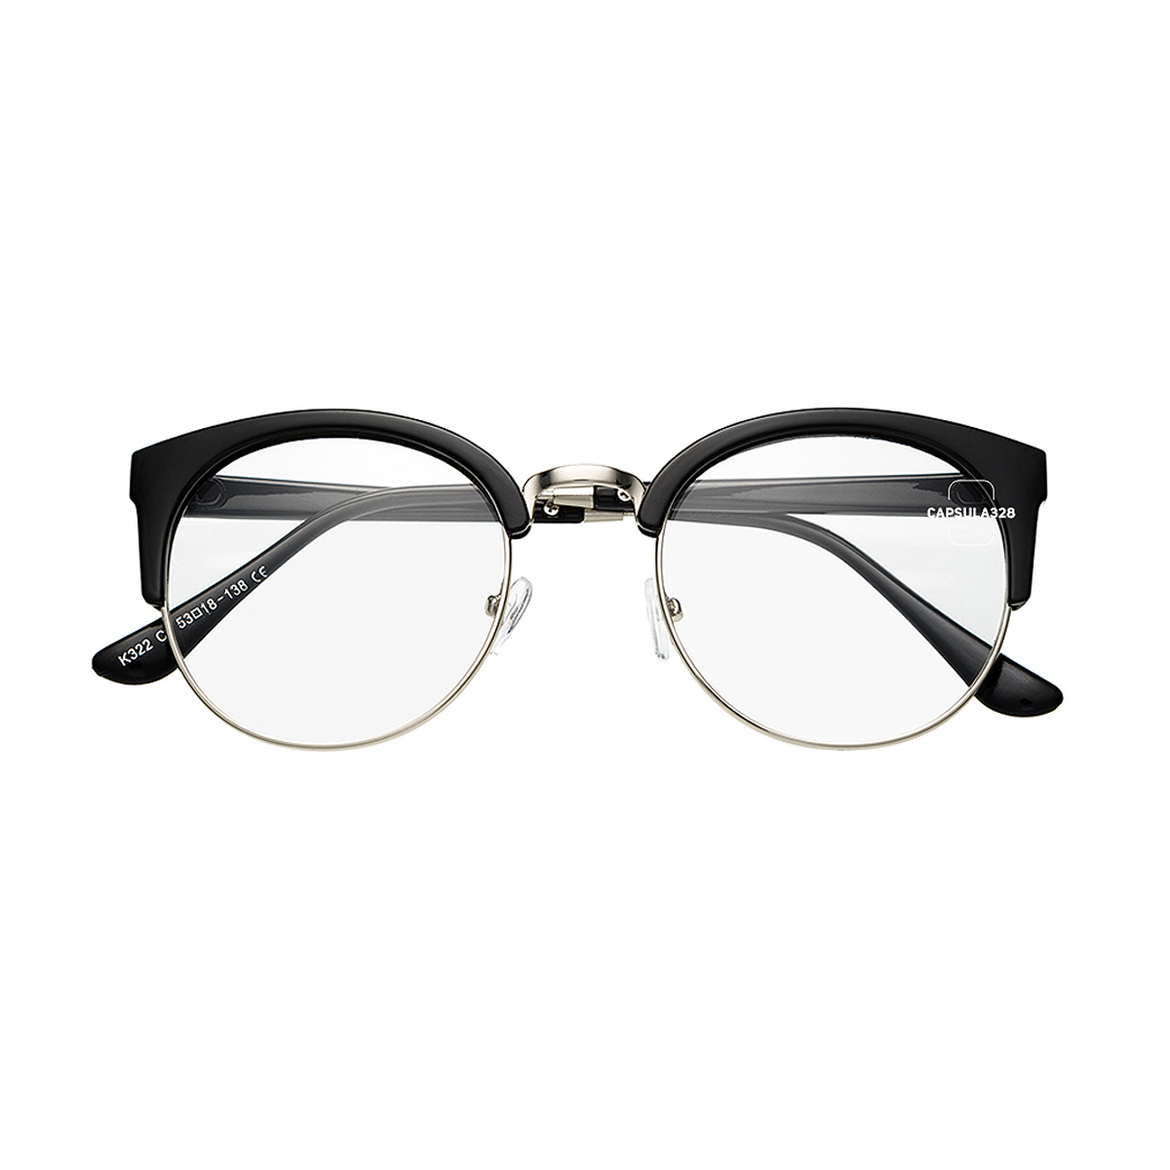 Іміджеві окуляри Browline 1210